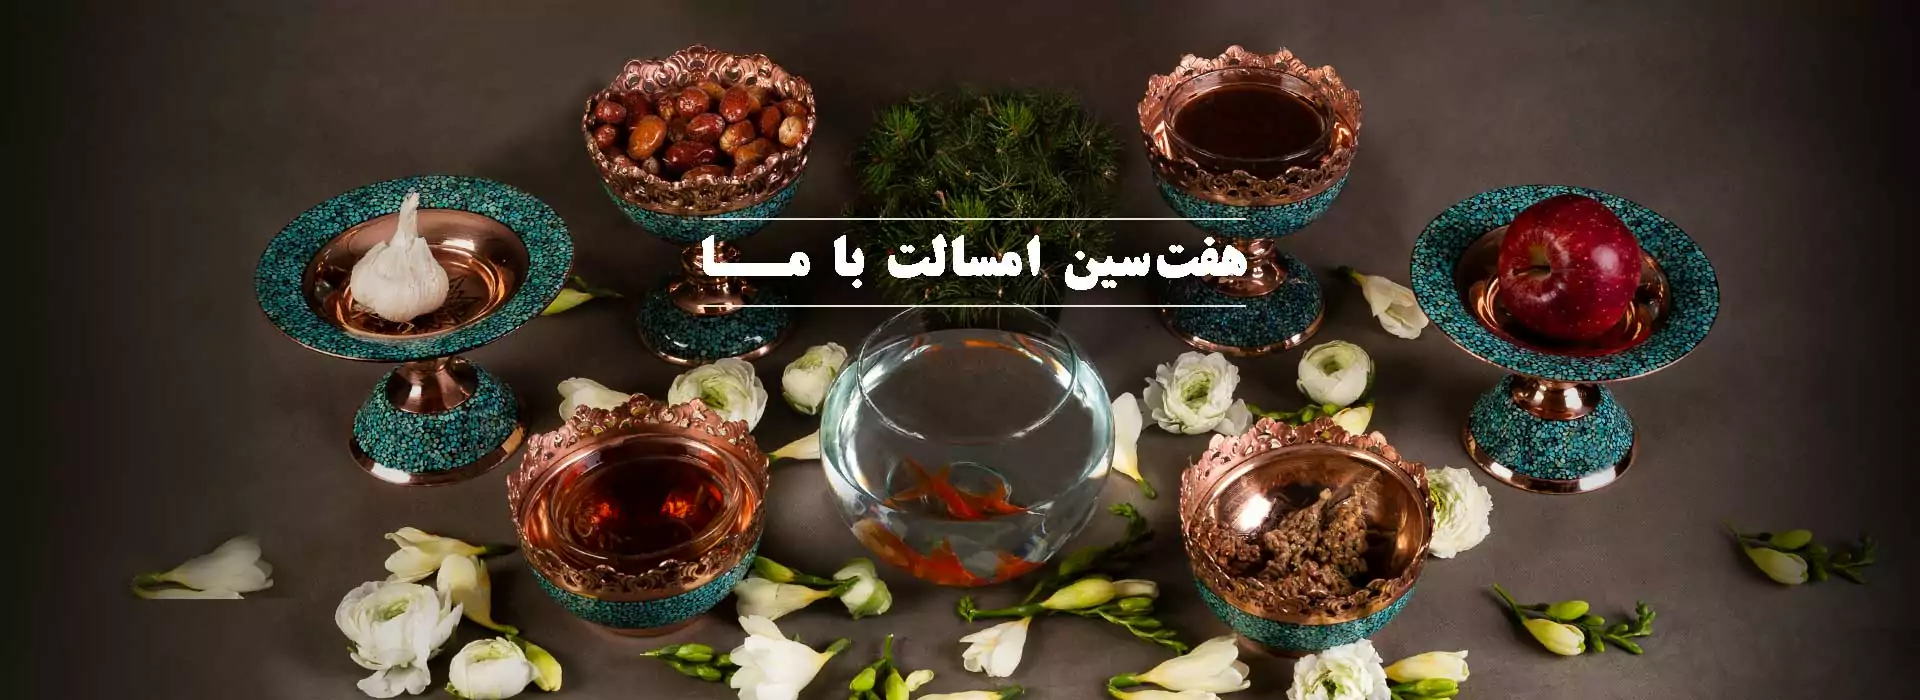 عید نوروز با محصولات آقاجانی